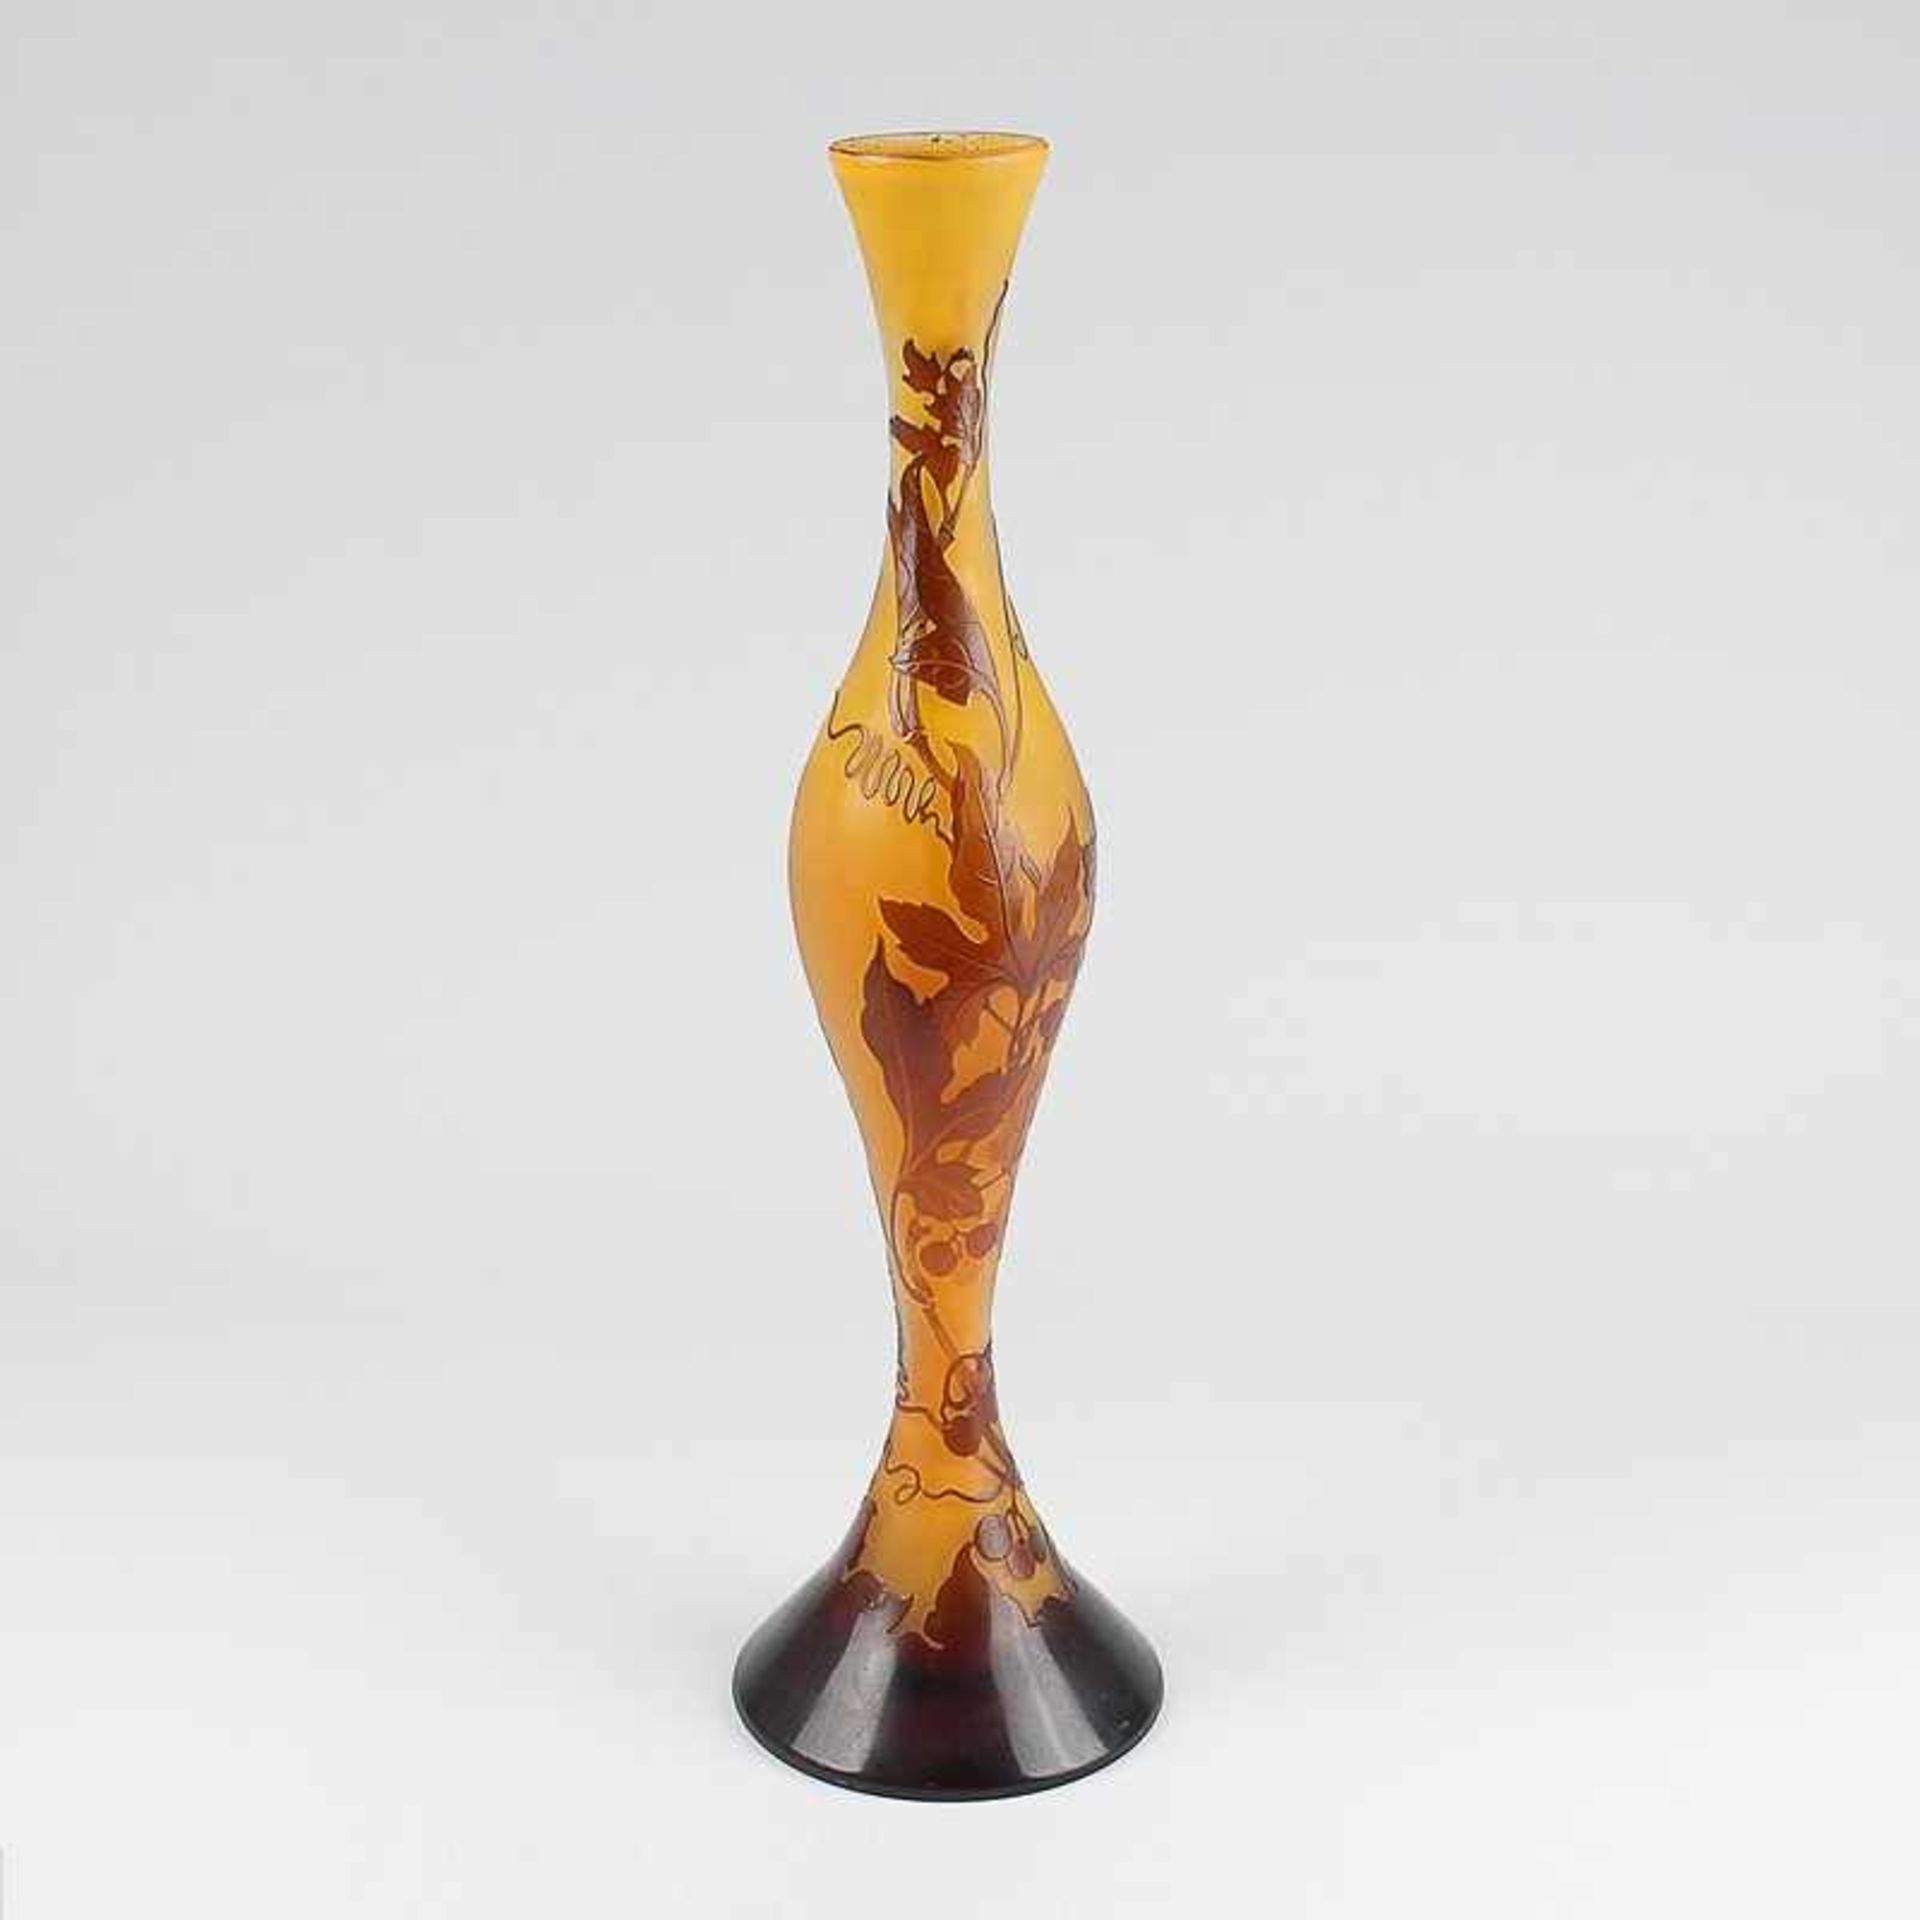 Gallé - Vase um 1900, Jugendstil, Emile Gallé, Frankreich, farbloses Glas, gelborange unterfangen,